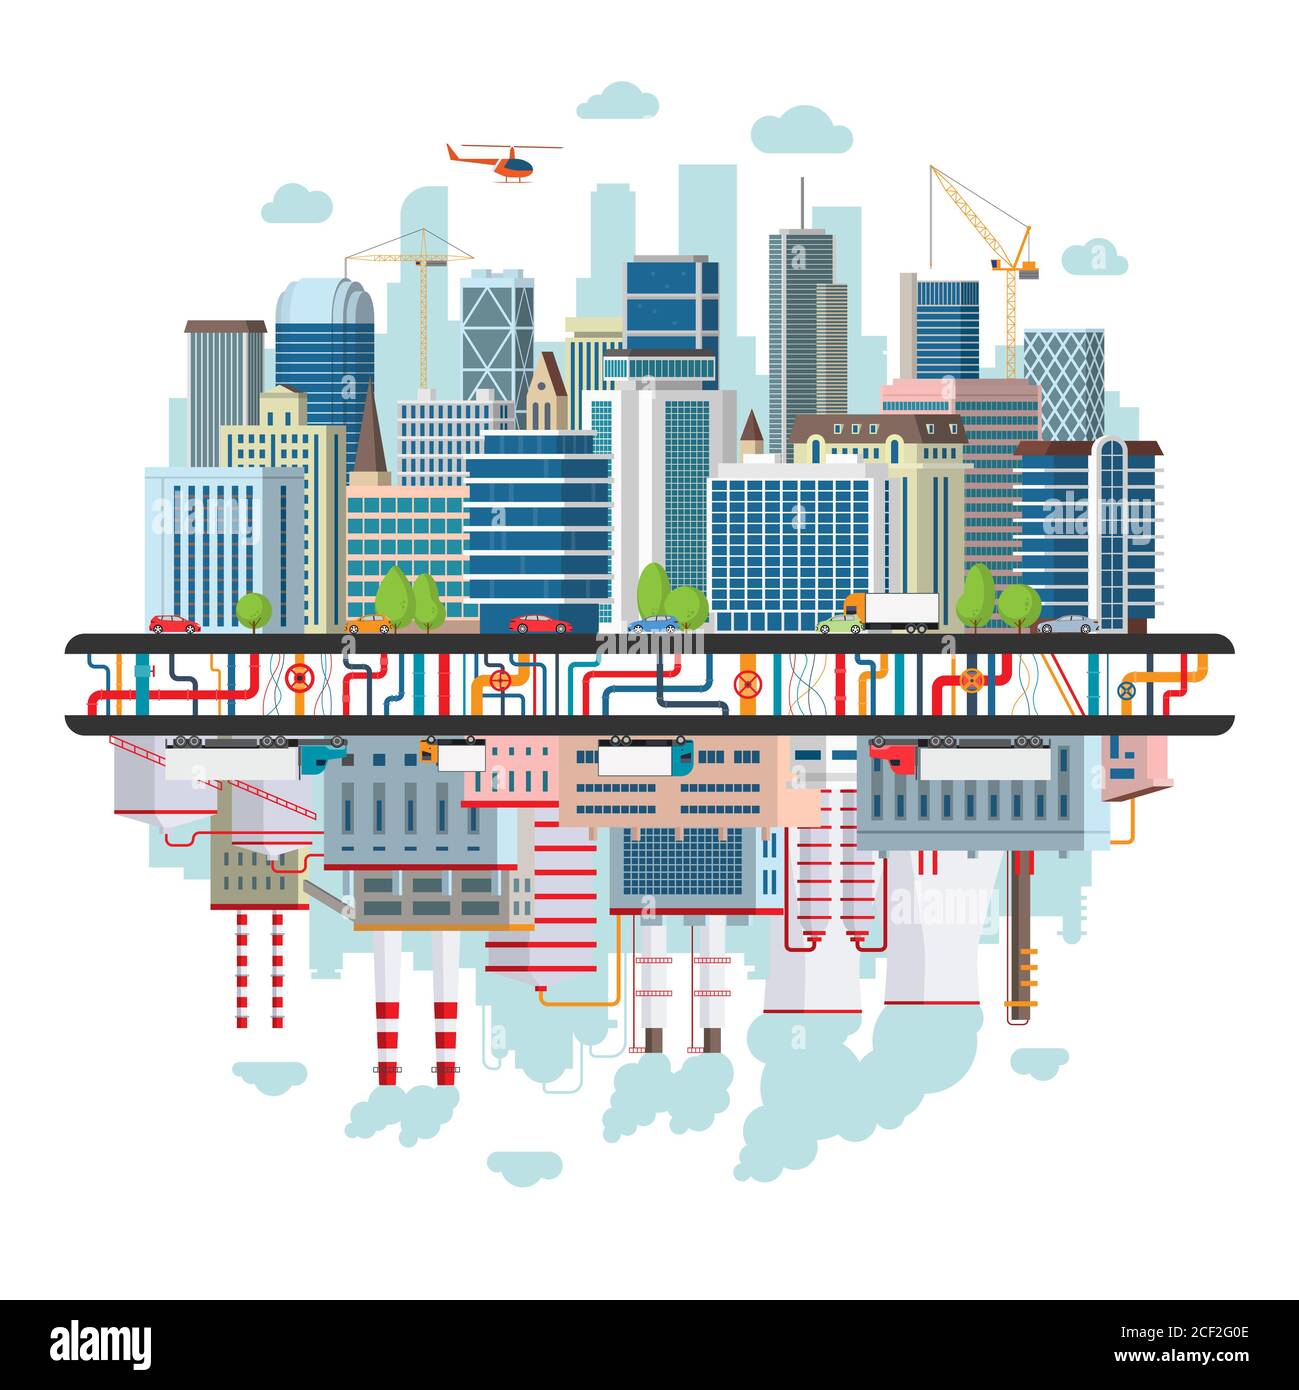 Landschaft einer Großstadt mit Verkehr, unterirdischer Kommunikation und einer Industriezone, die die Stadt mit Energie versorgt und die Umwelt verschmutzt. Stockfoto